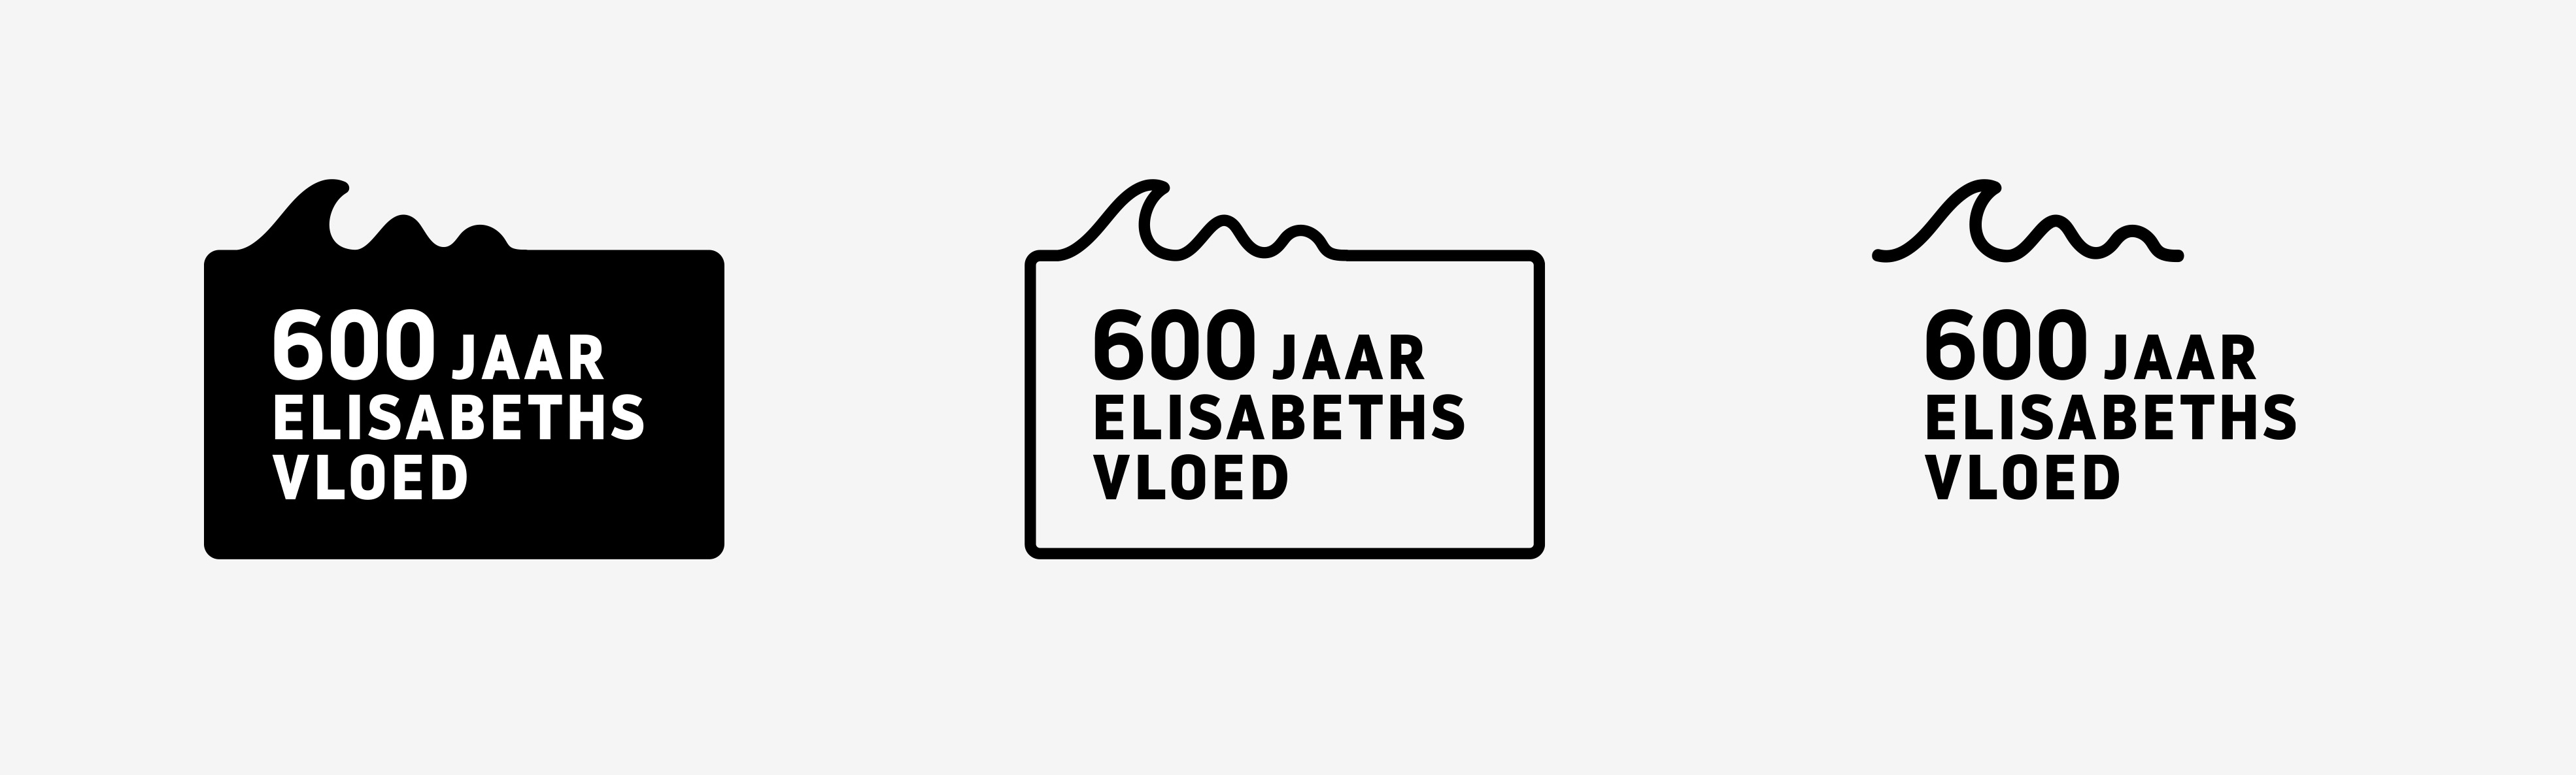 600 Jaar Elisabethsvloed Logos